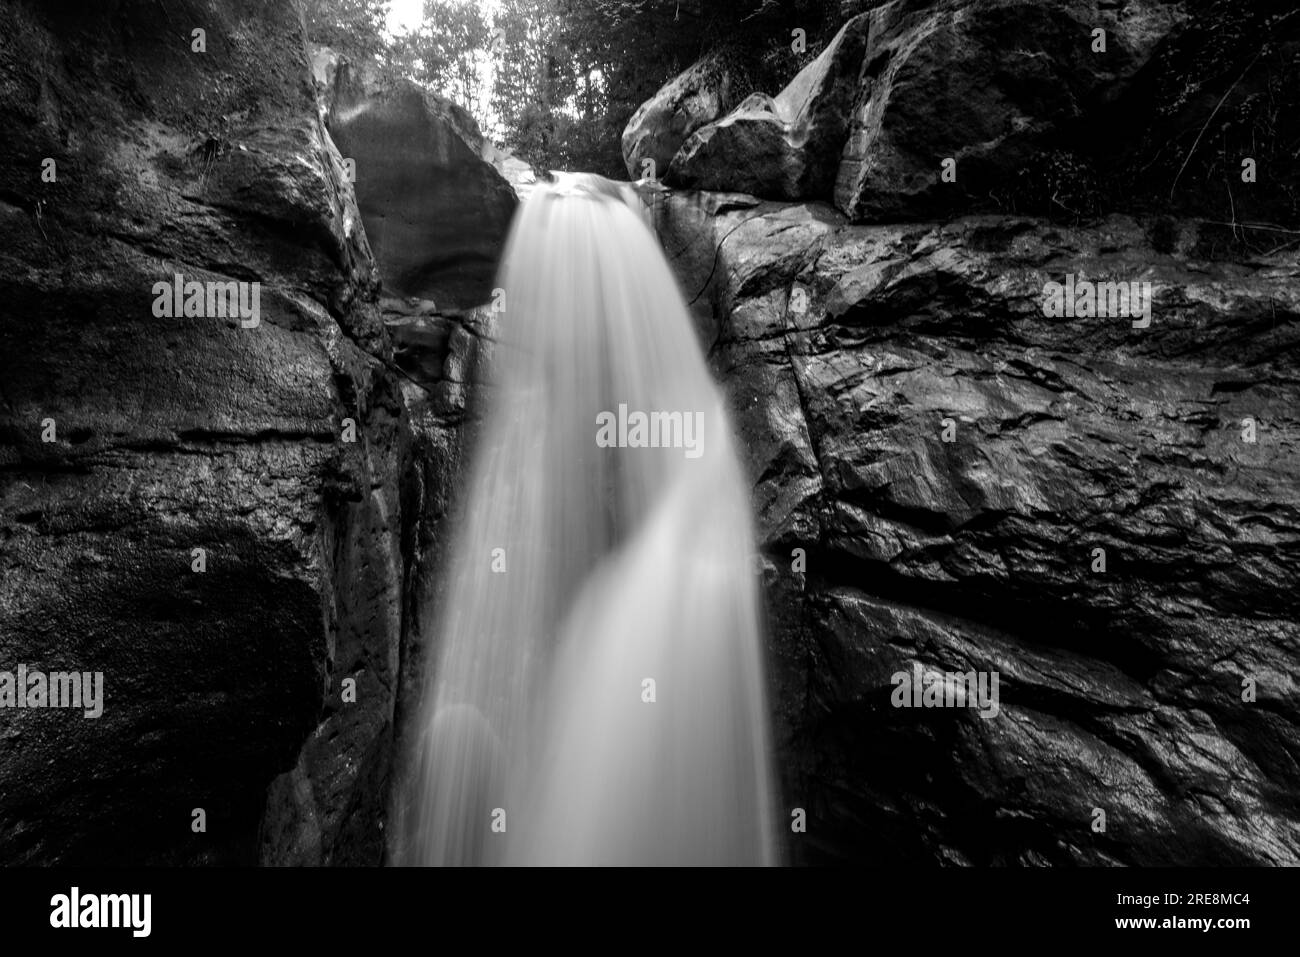 Aufnahmen mit langer Belichtung im Wasserfall in Schwarzweiß Stockfoto